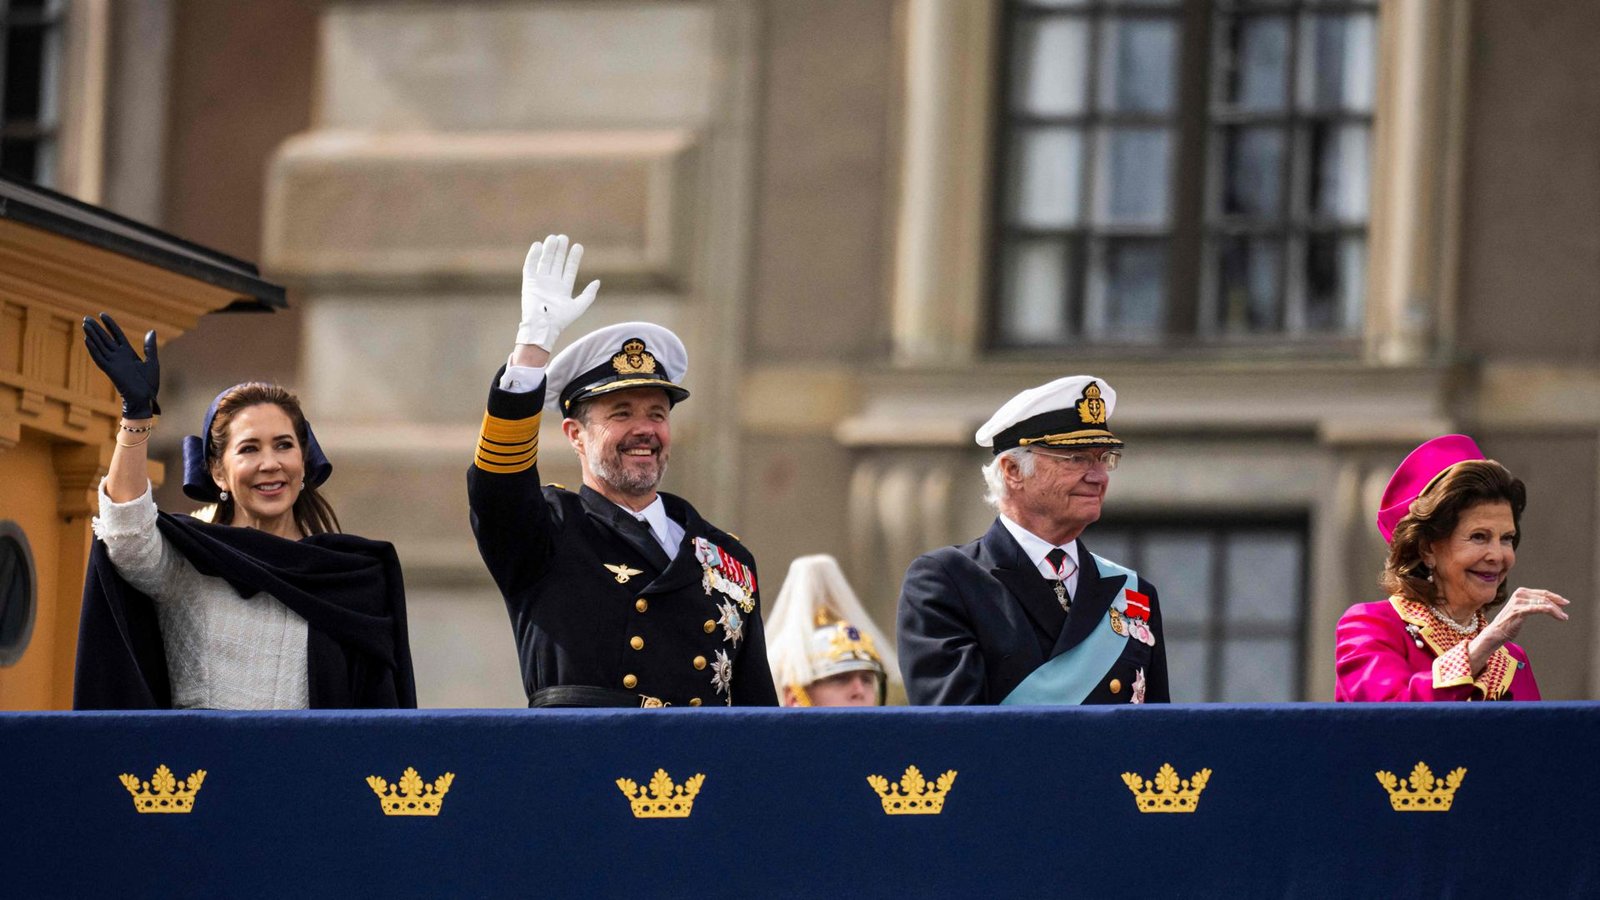 Ihre Ankunft wurde im schwedischen Fernsehen live übertragen.Foto: AFP/JONATHAN NACKSTRAND